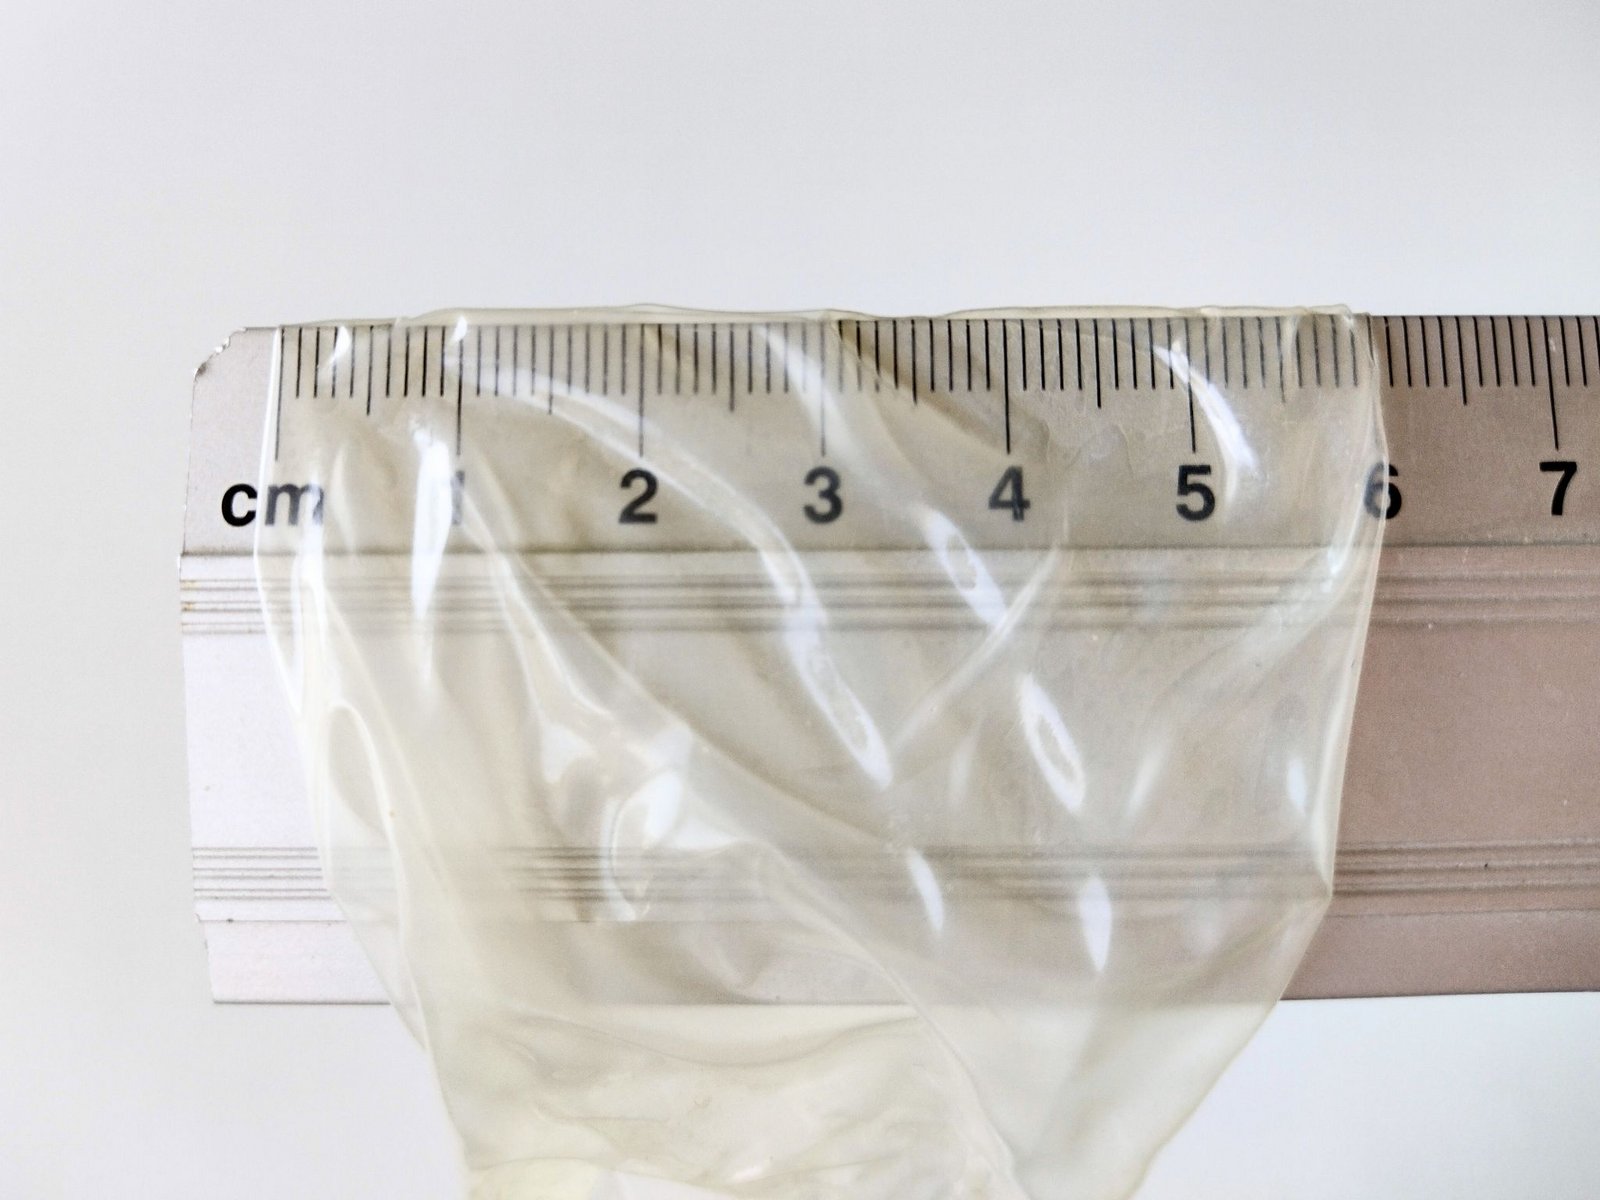 Largura nominal de um preservativo medida com uma régua